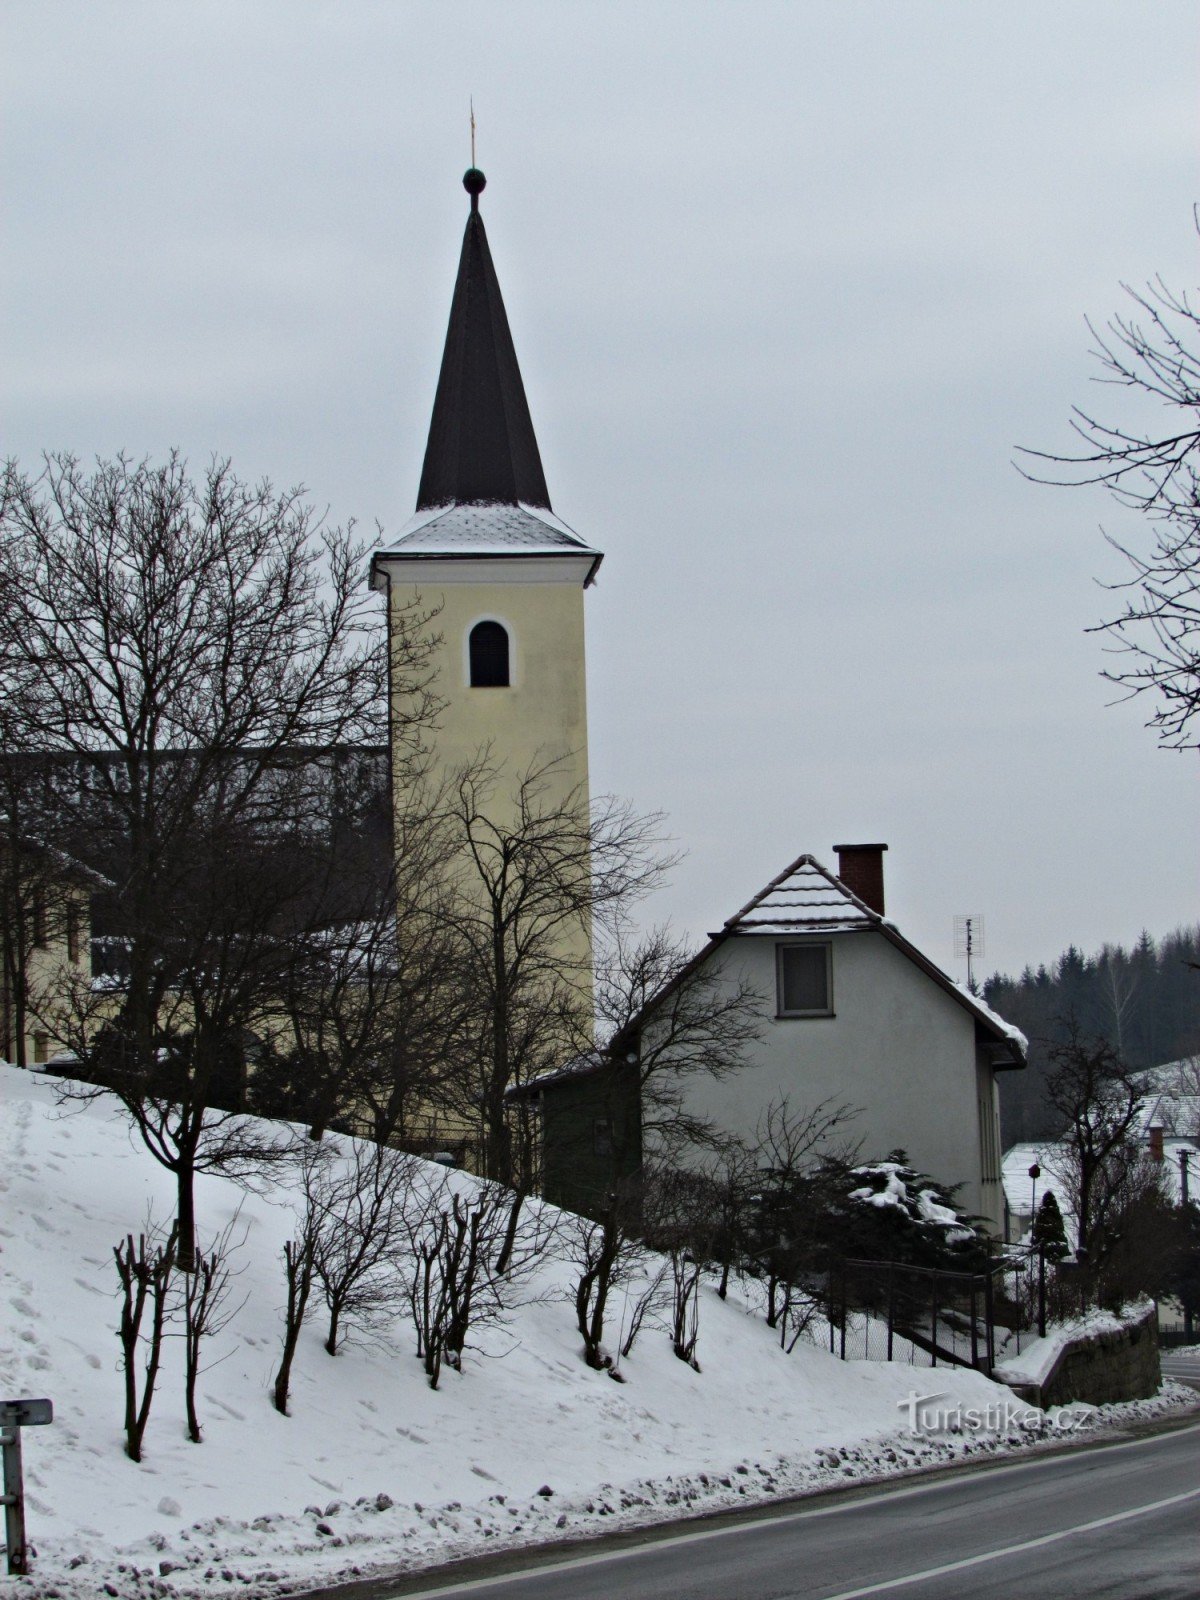 Jasenná - nhà thờ Công giáo